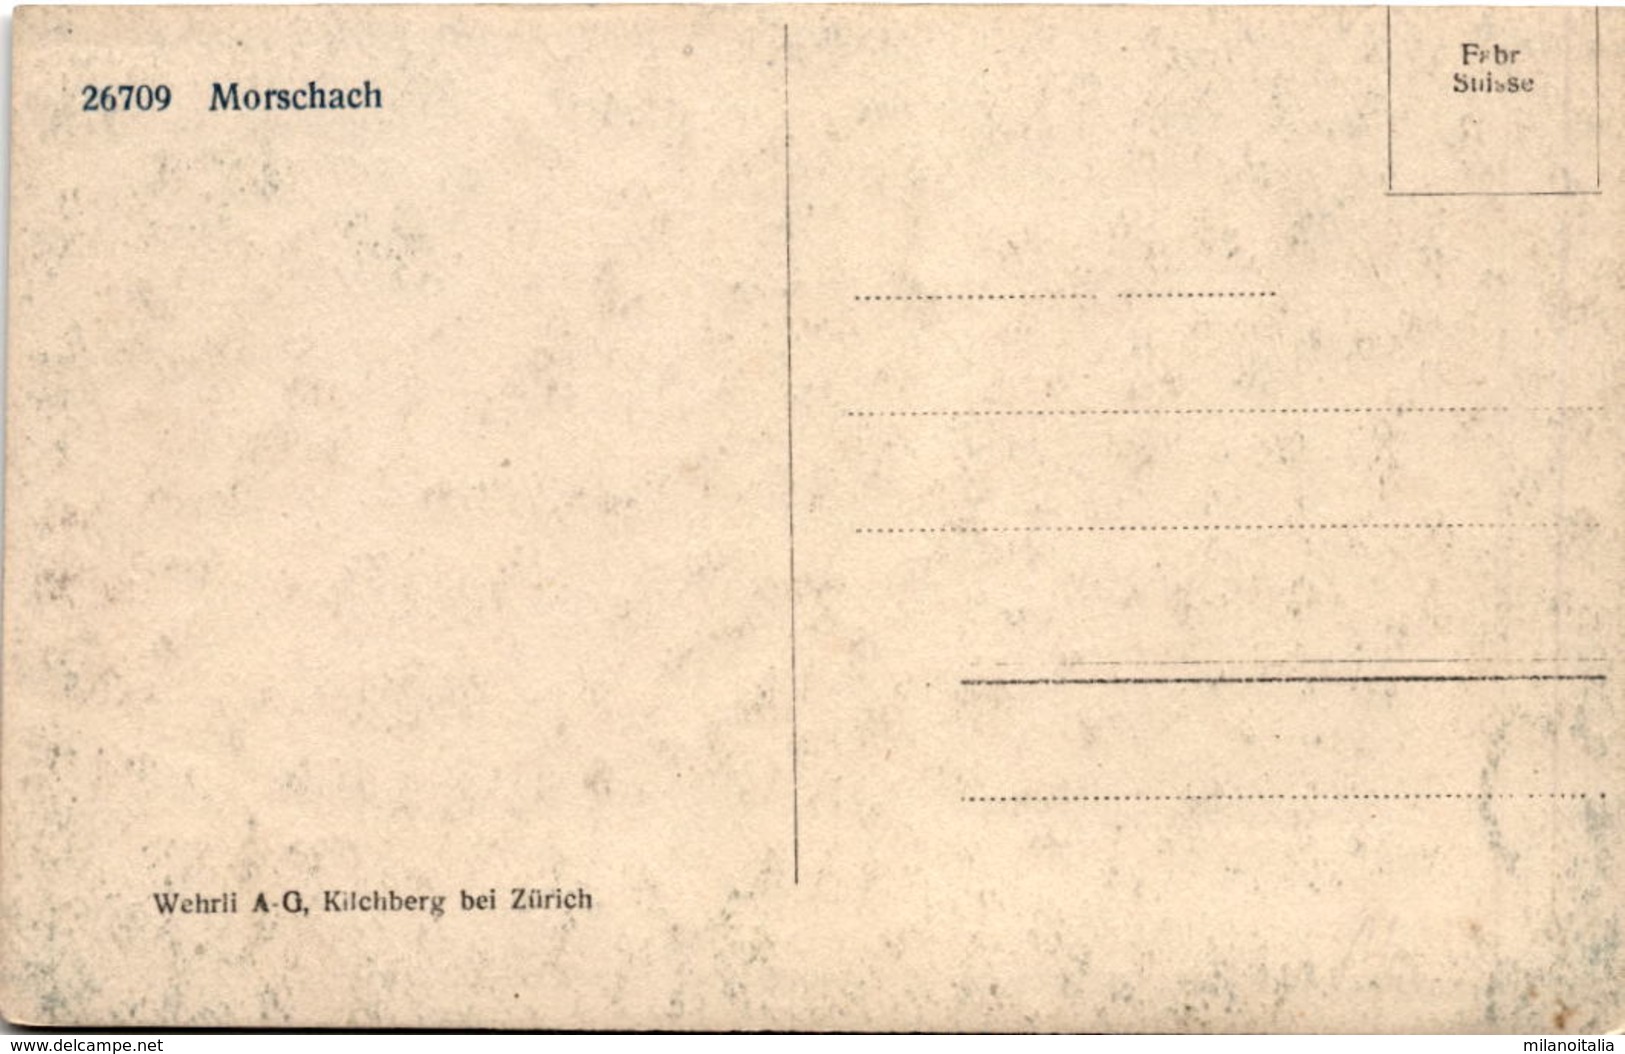 Morschach (26709) - Morschach